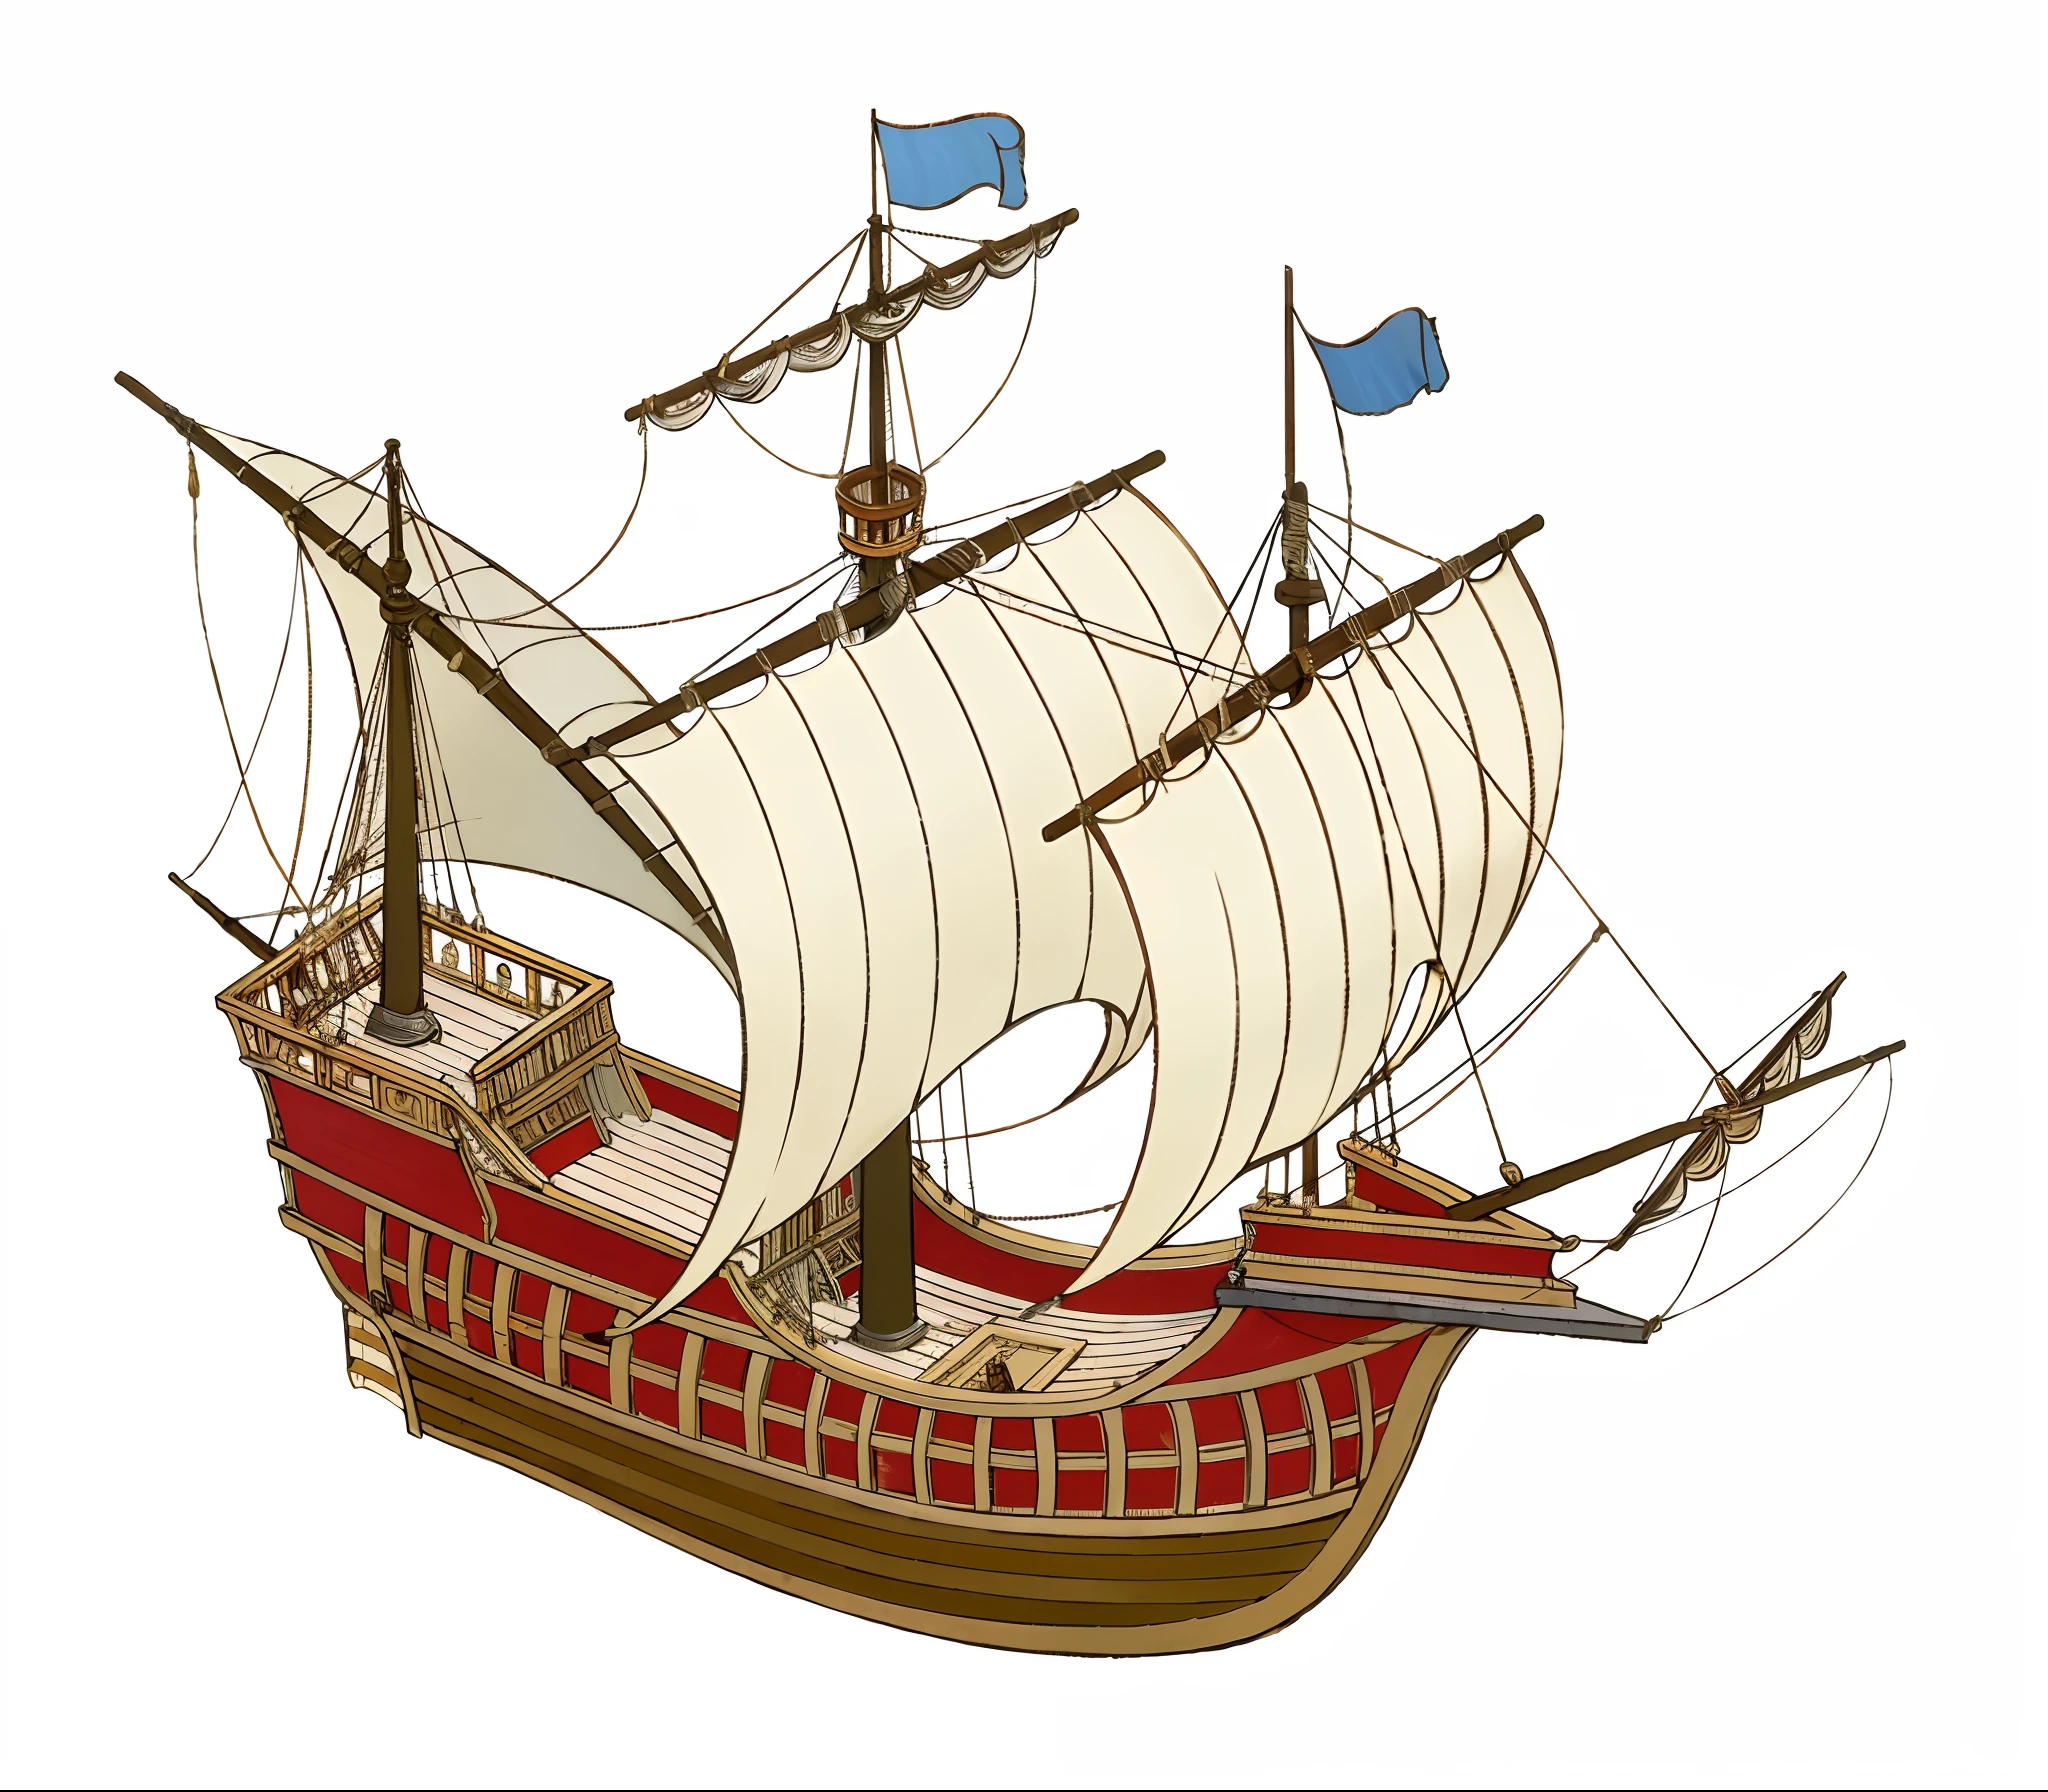 大型キャラック船の全体と完全な姿を見せる，前マストの四角帆とメインマストの四角帆、後マストの三角帆，マストは全部で3本しかない，16世紀初頭，大きくて丸くて幅の広い船体，帆は3枚あります, 長さ63フィート，幅20フィート，10.幅5フィート. このボートは十分に頑丈であることが特徴である、乗務員の宿泊に十分な広さ, 200トン。船体はがっしりとしていて、とても丸い，船の側面は高い。船尾塔がある。